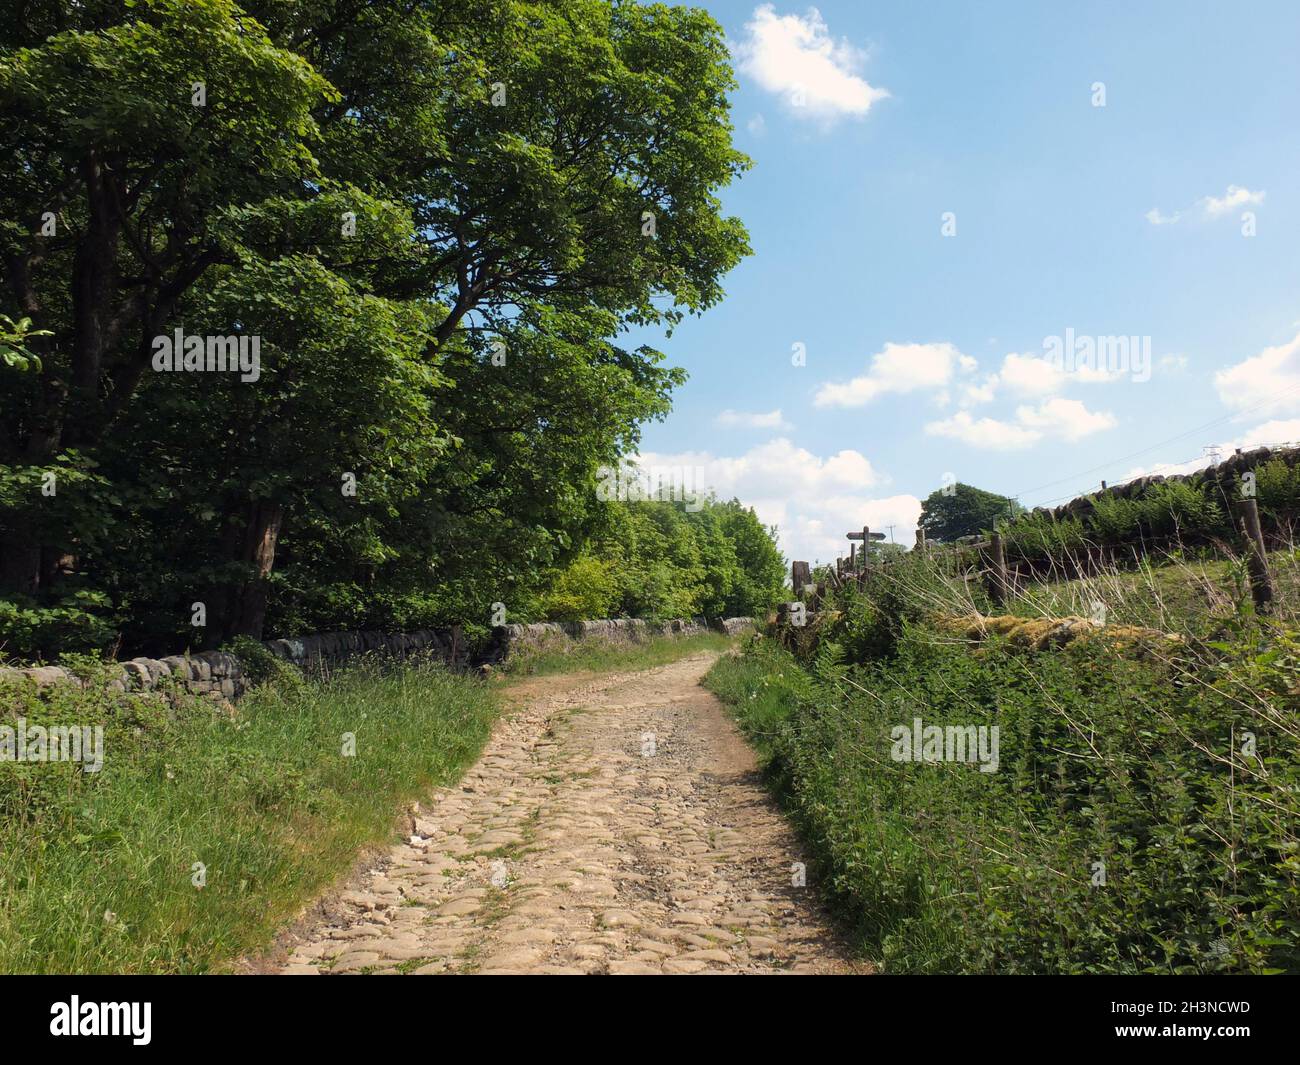 Vue panoramique sur une étroite ruelle de campagne pavée entourée de murs de pierre, d'herbe et d'arbres dans la campagne du Yorkshire de l'ouest du wisconsin Banque D'Images